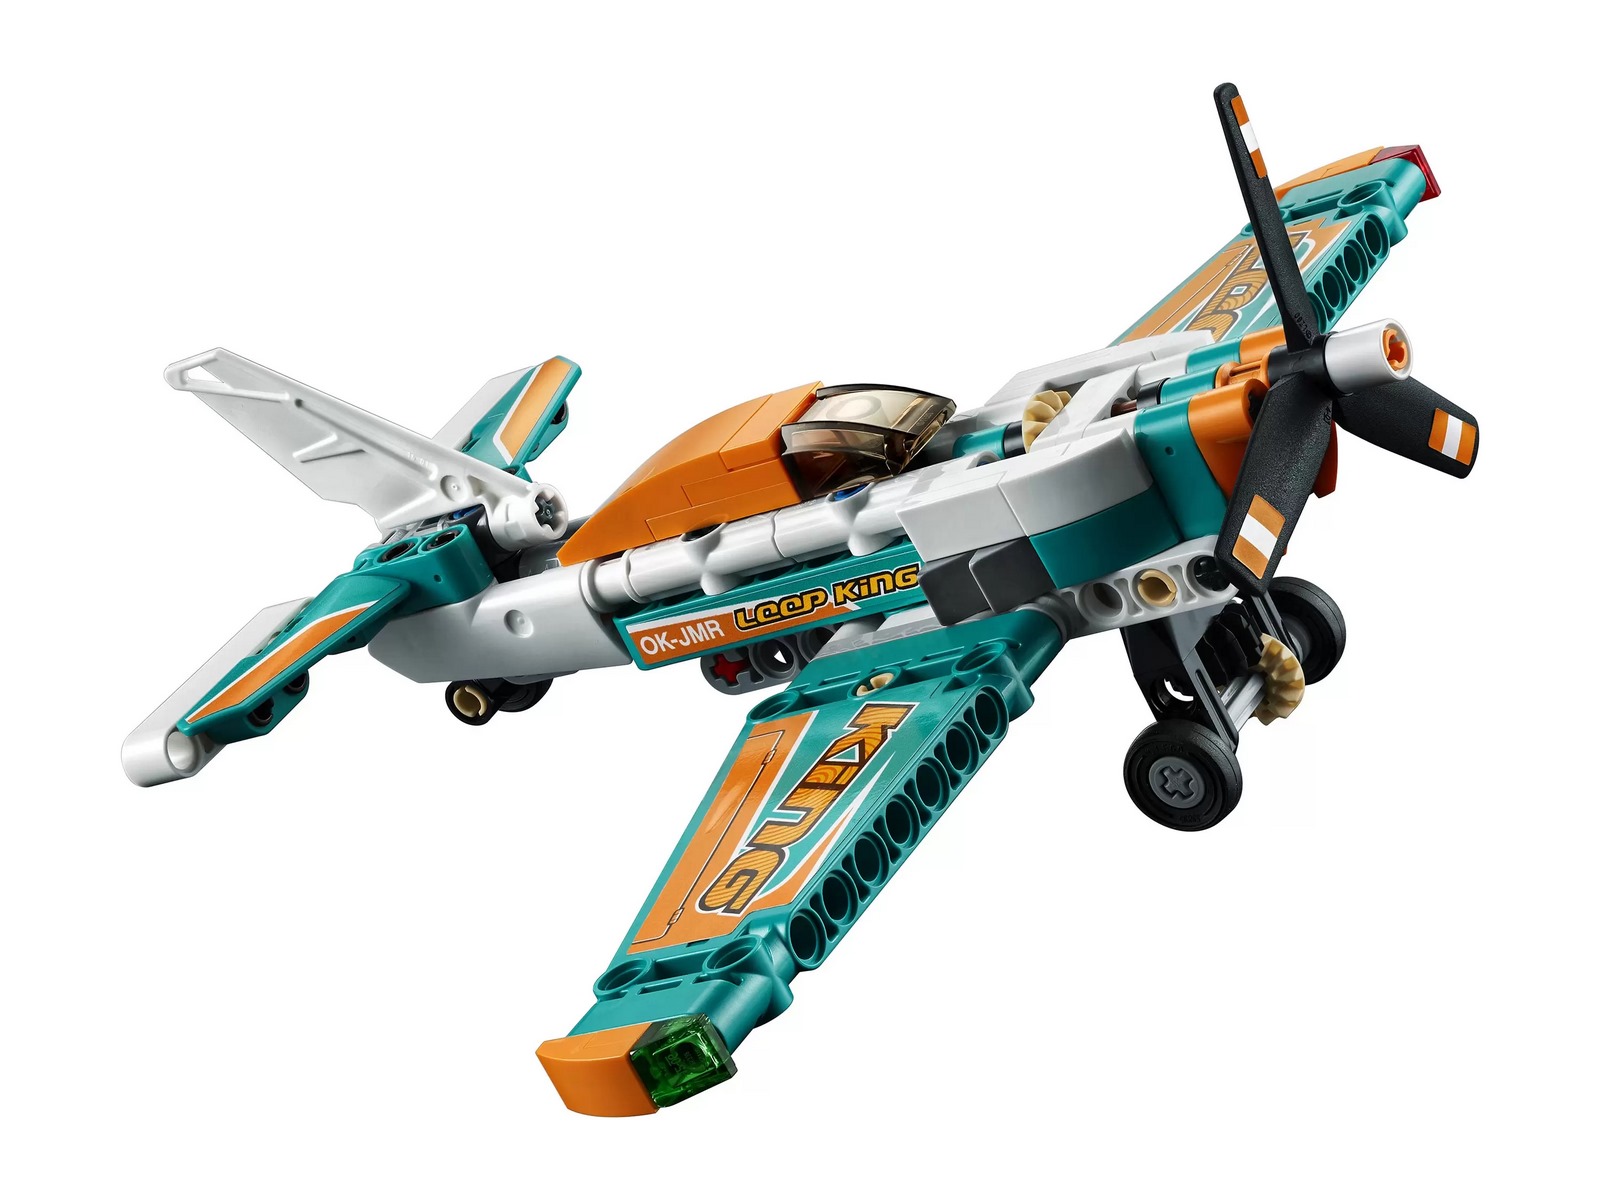 Конструктор LEGO Technic «Гоночный самолёт» 42117 / 154 детали